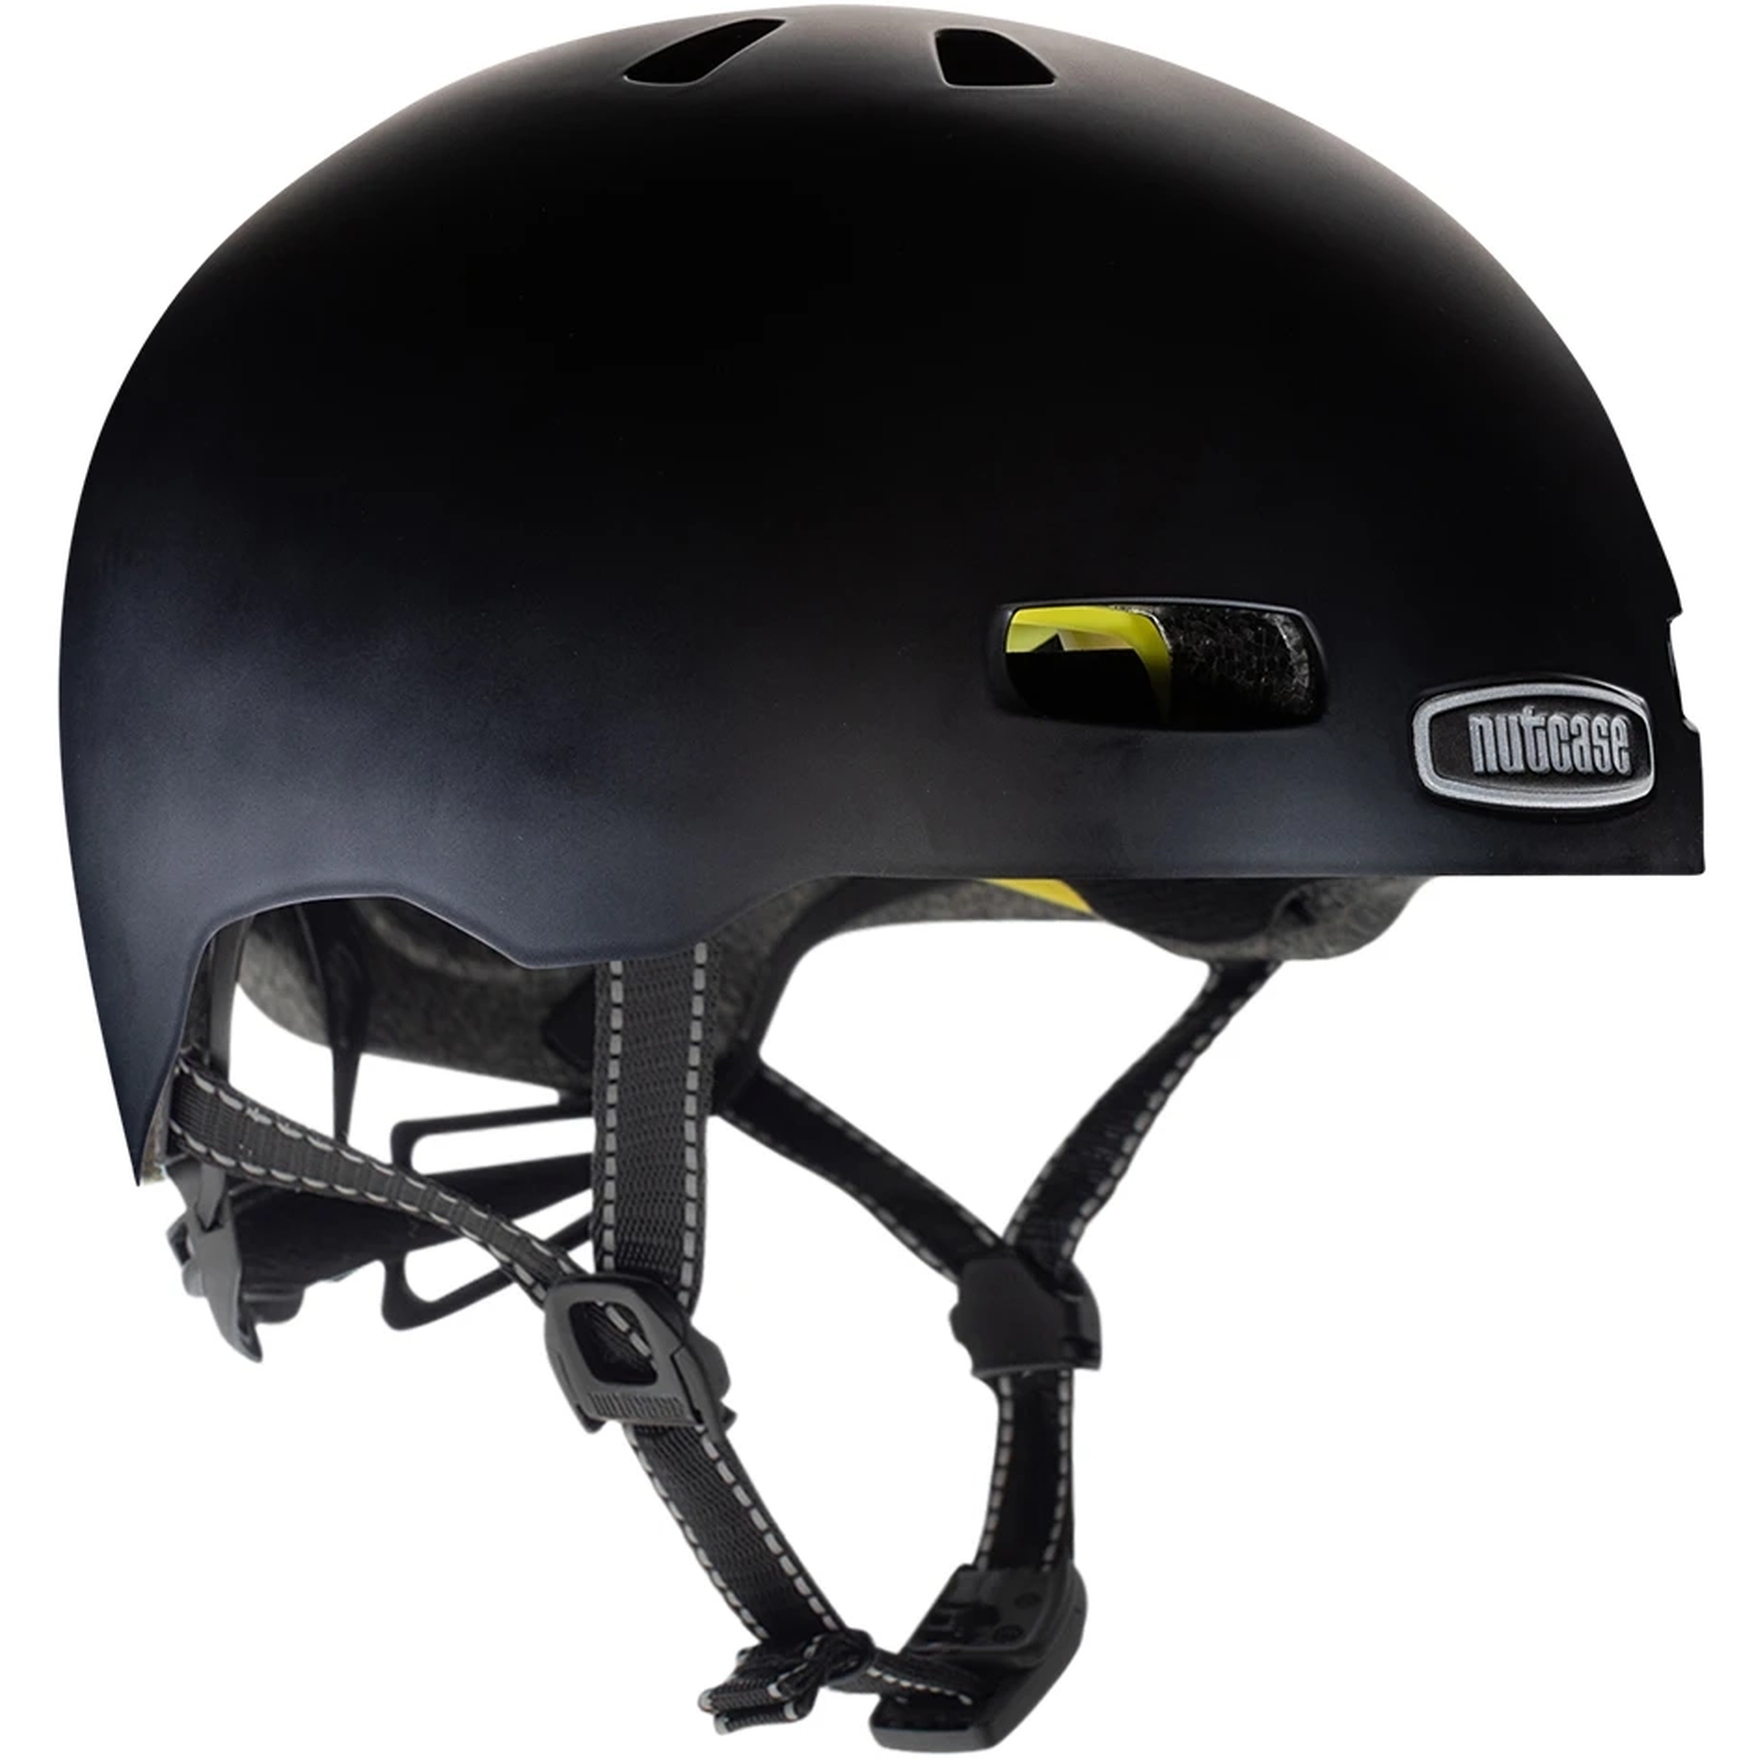 Productfoto van Nutcase Street MIPS Helmet - Onyx Solid Satin